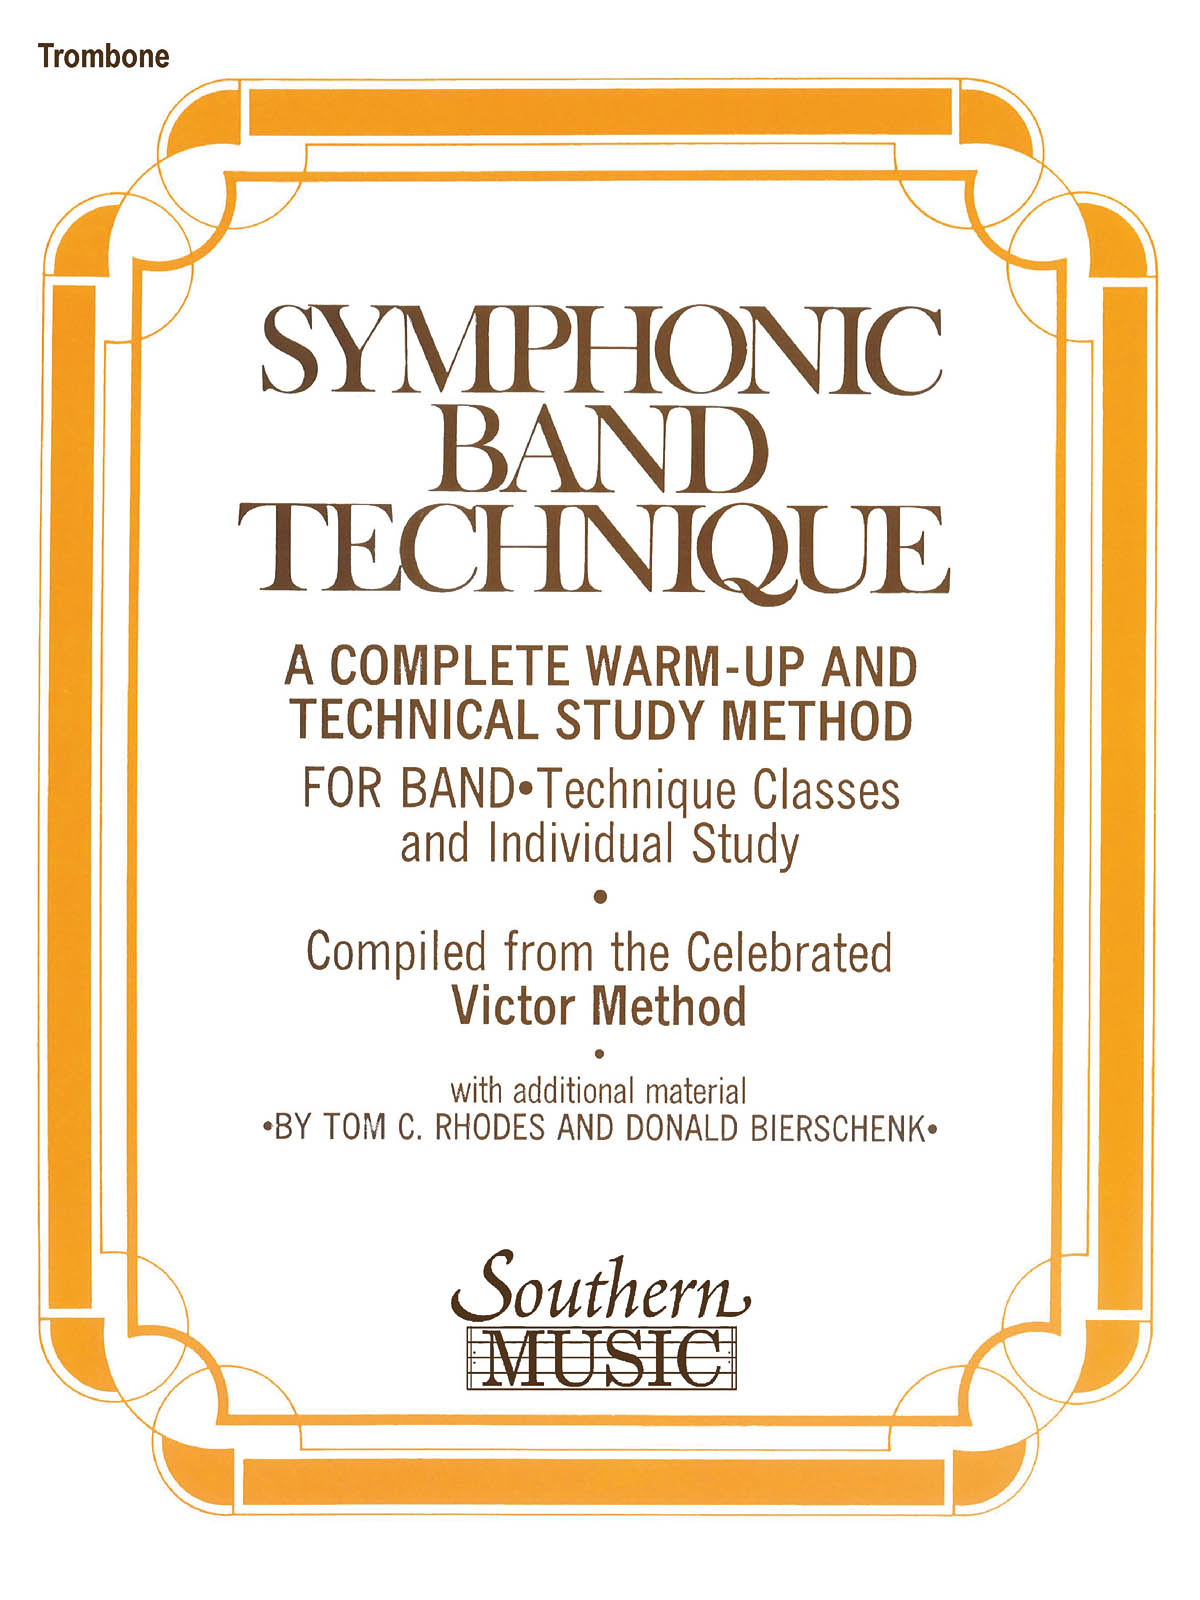 Symphonic Band Technique (Sbt) - skladby pro trombon